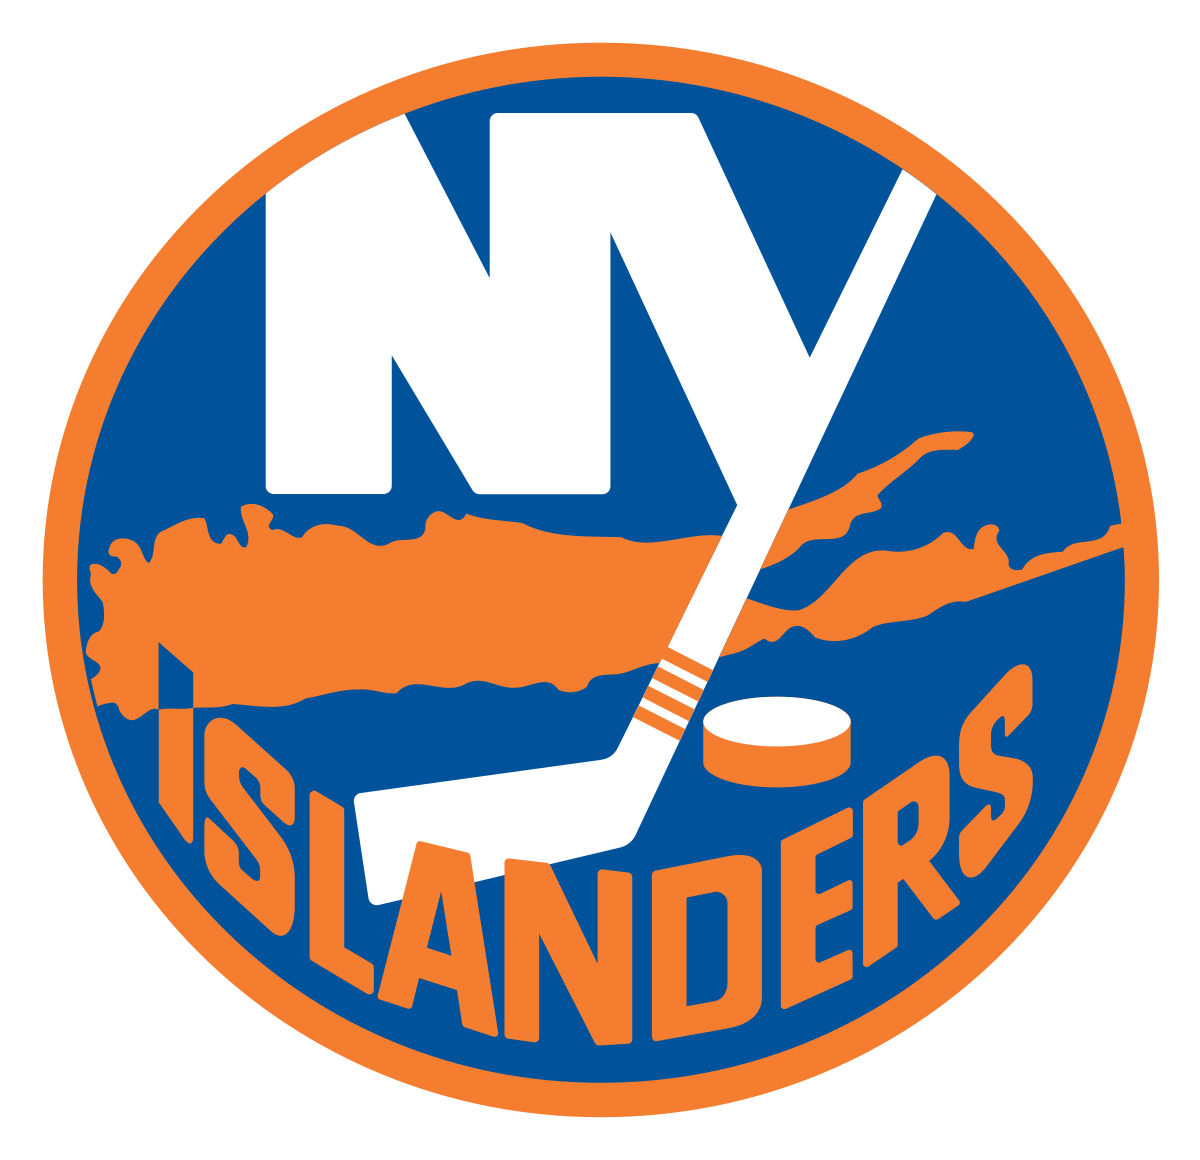 islanders logo.png